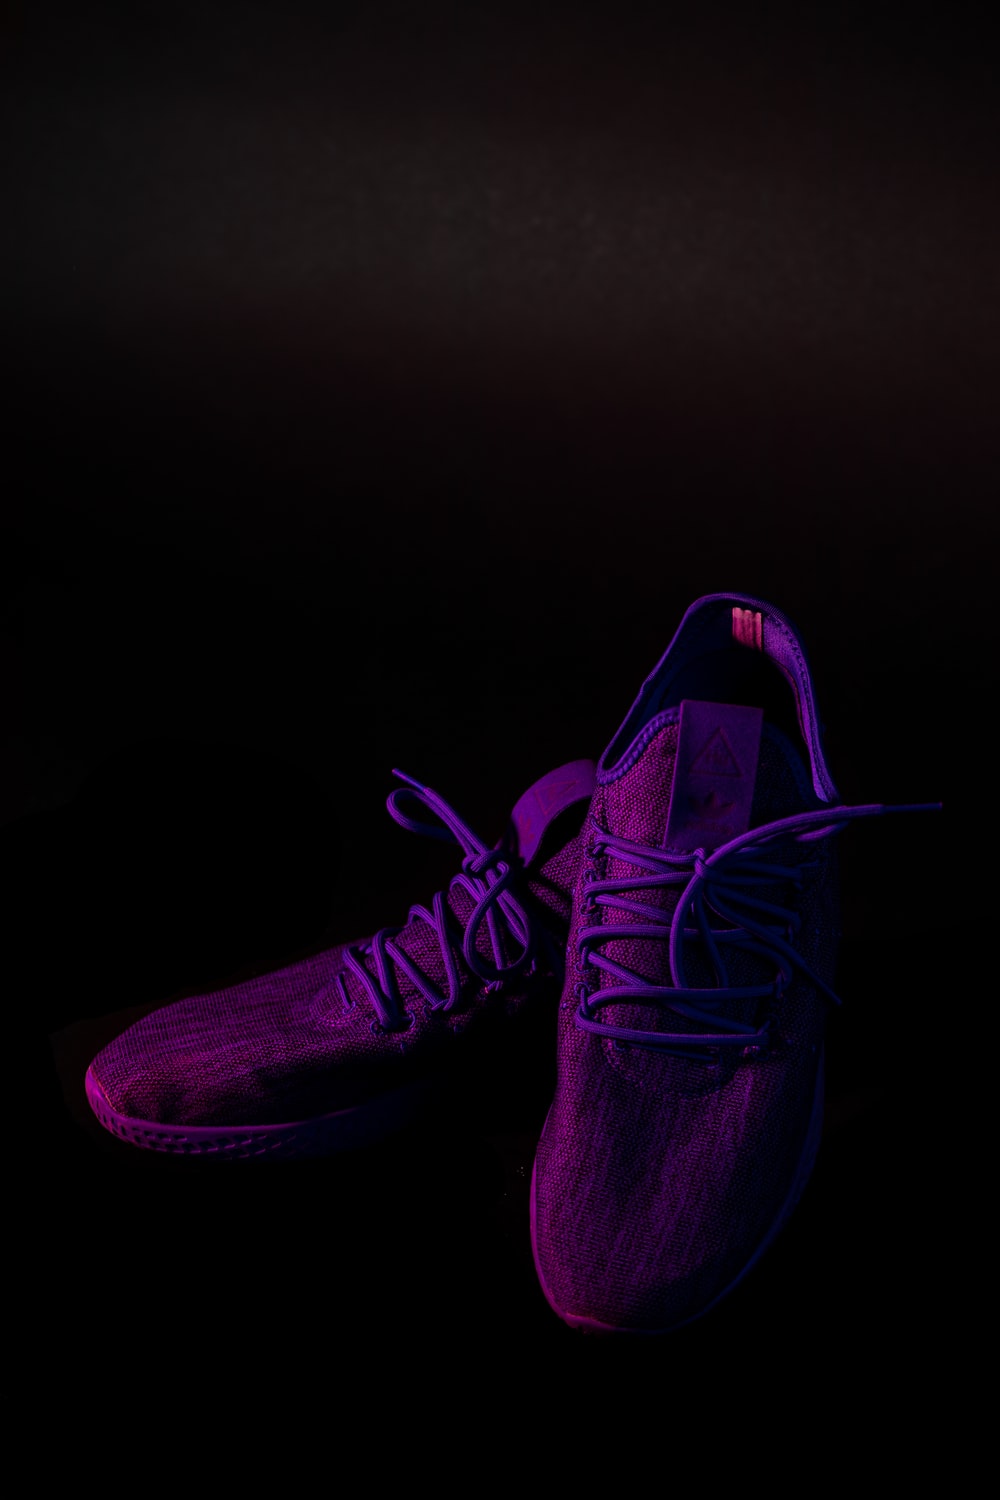 pair of purple mesh running shoes photo